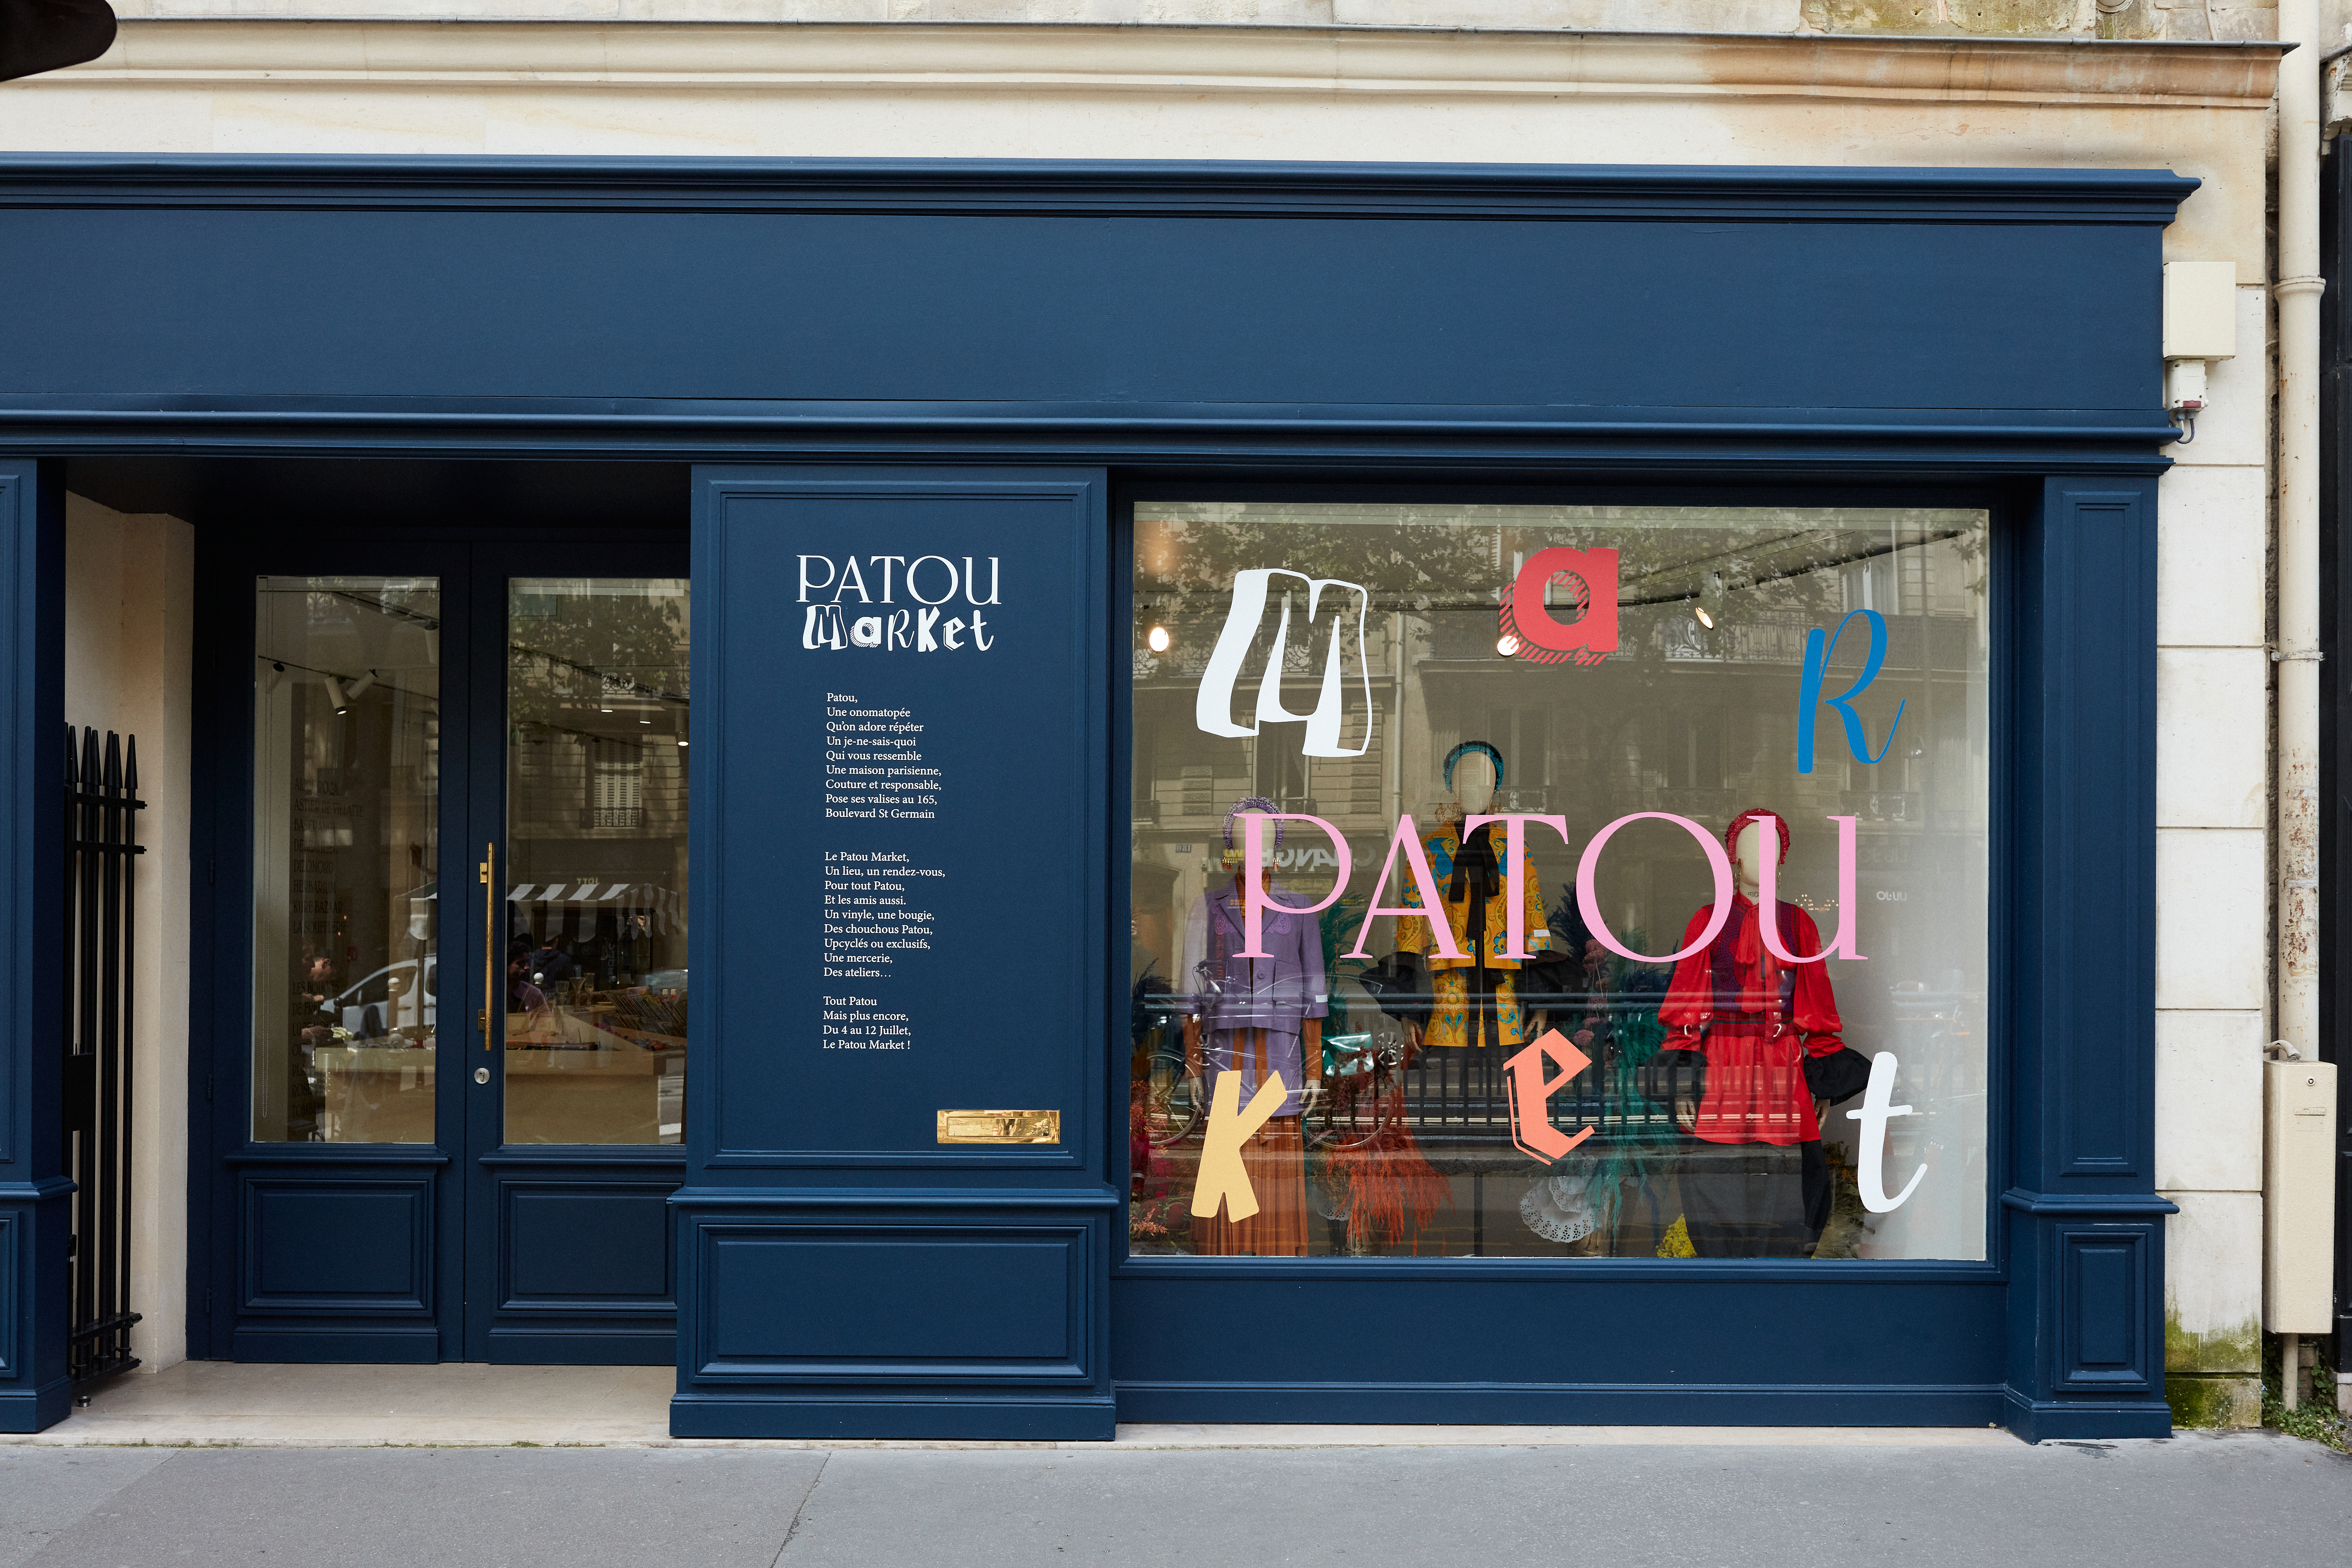 la-soufflerie-patou-pop-up-shop-paris-saint-germain-store-front-collaboration